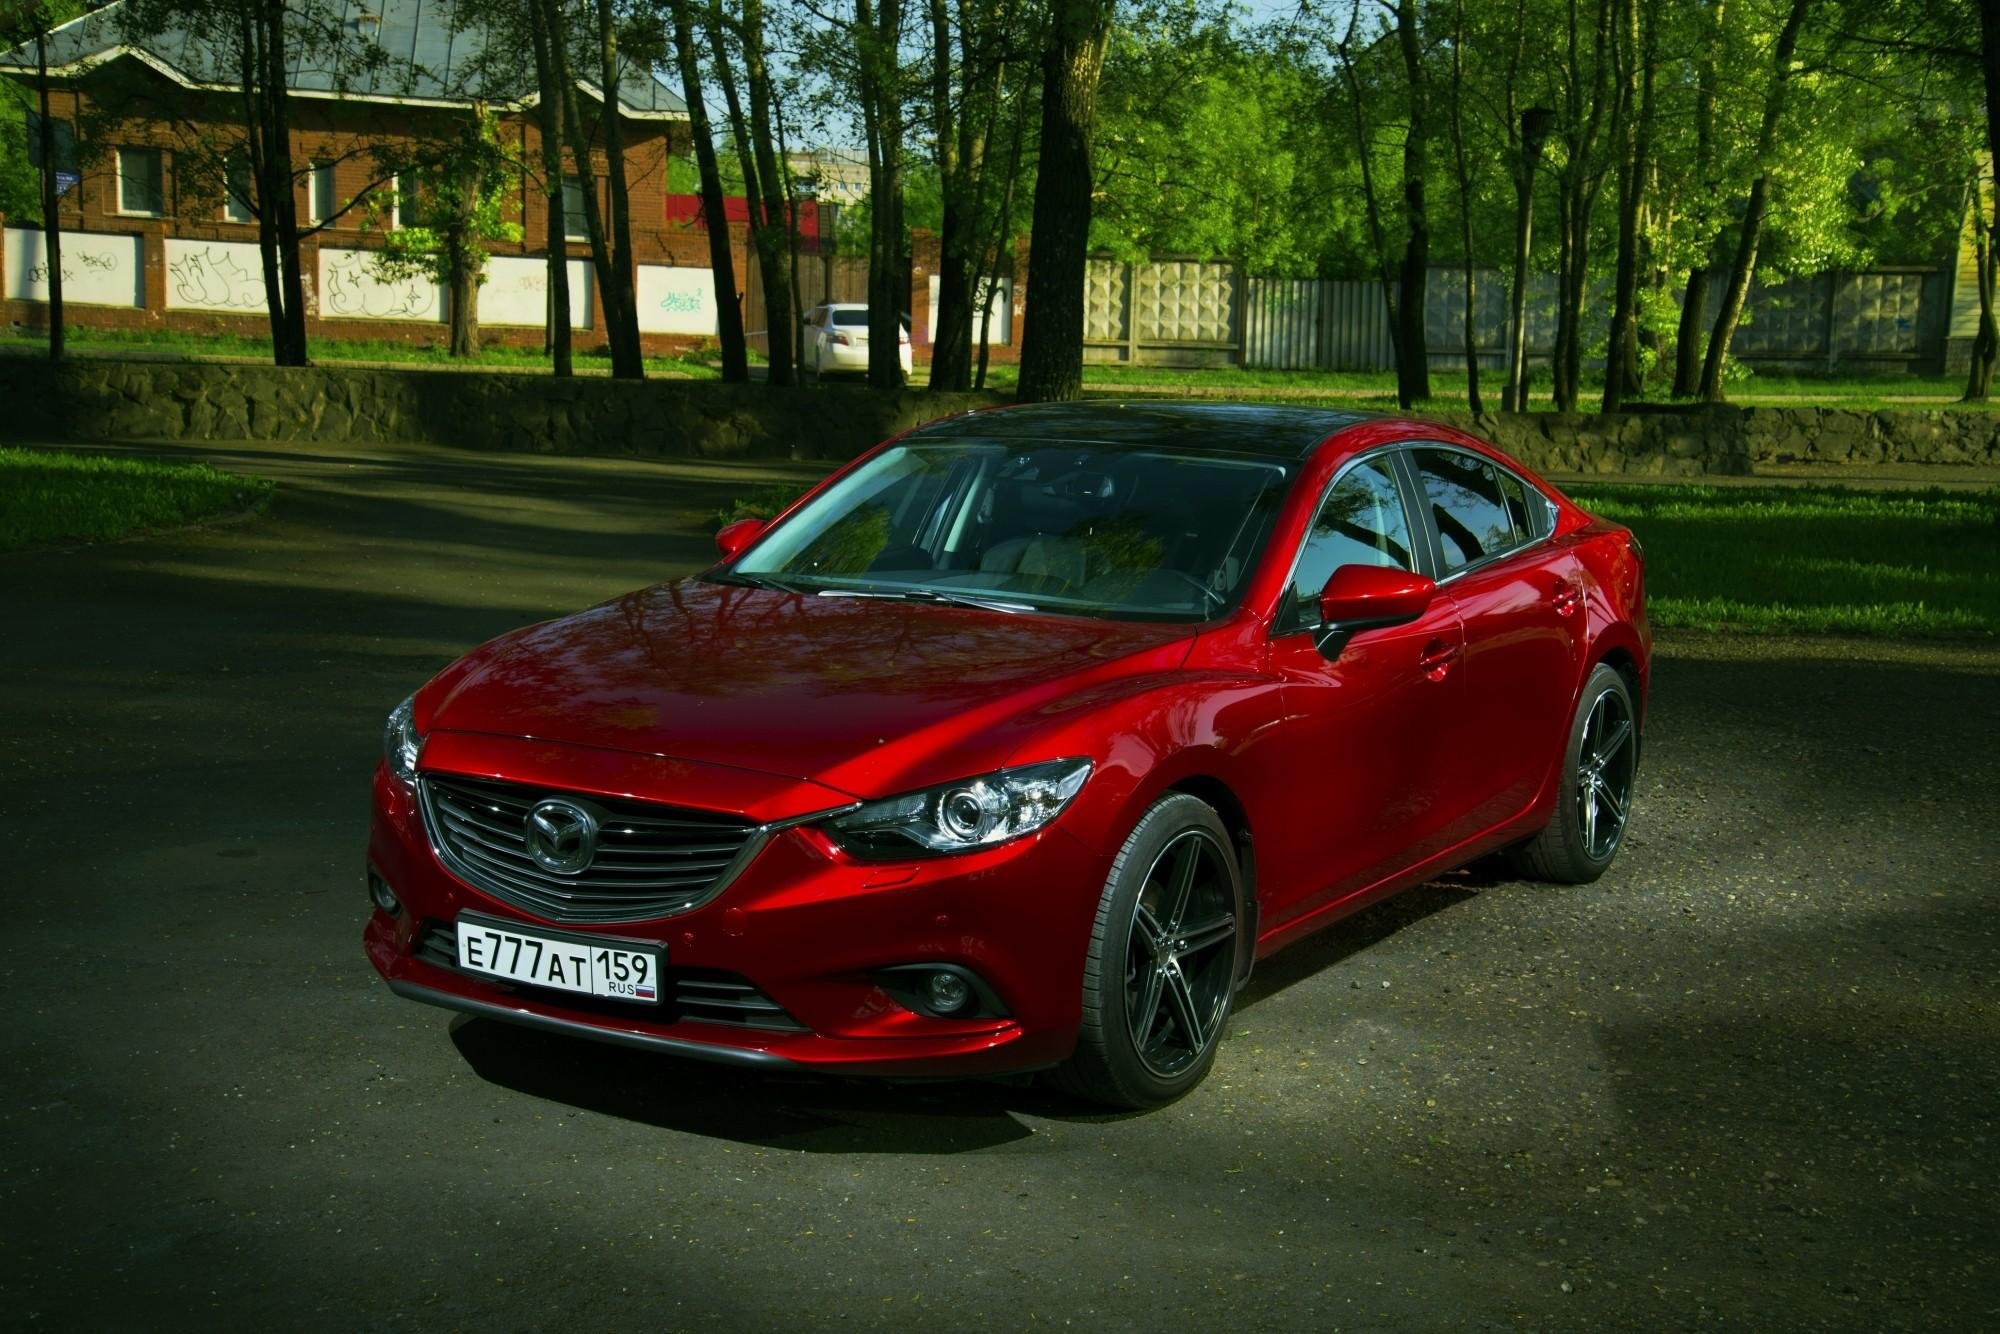 Купить мазду в ярославле. Mazda 6 Red. Мазда 6 2015 года красная. Мазда 6 красная новый кузов. Мазда 6 красная седан.